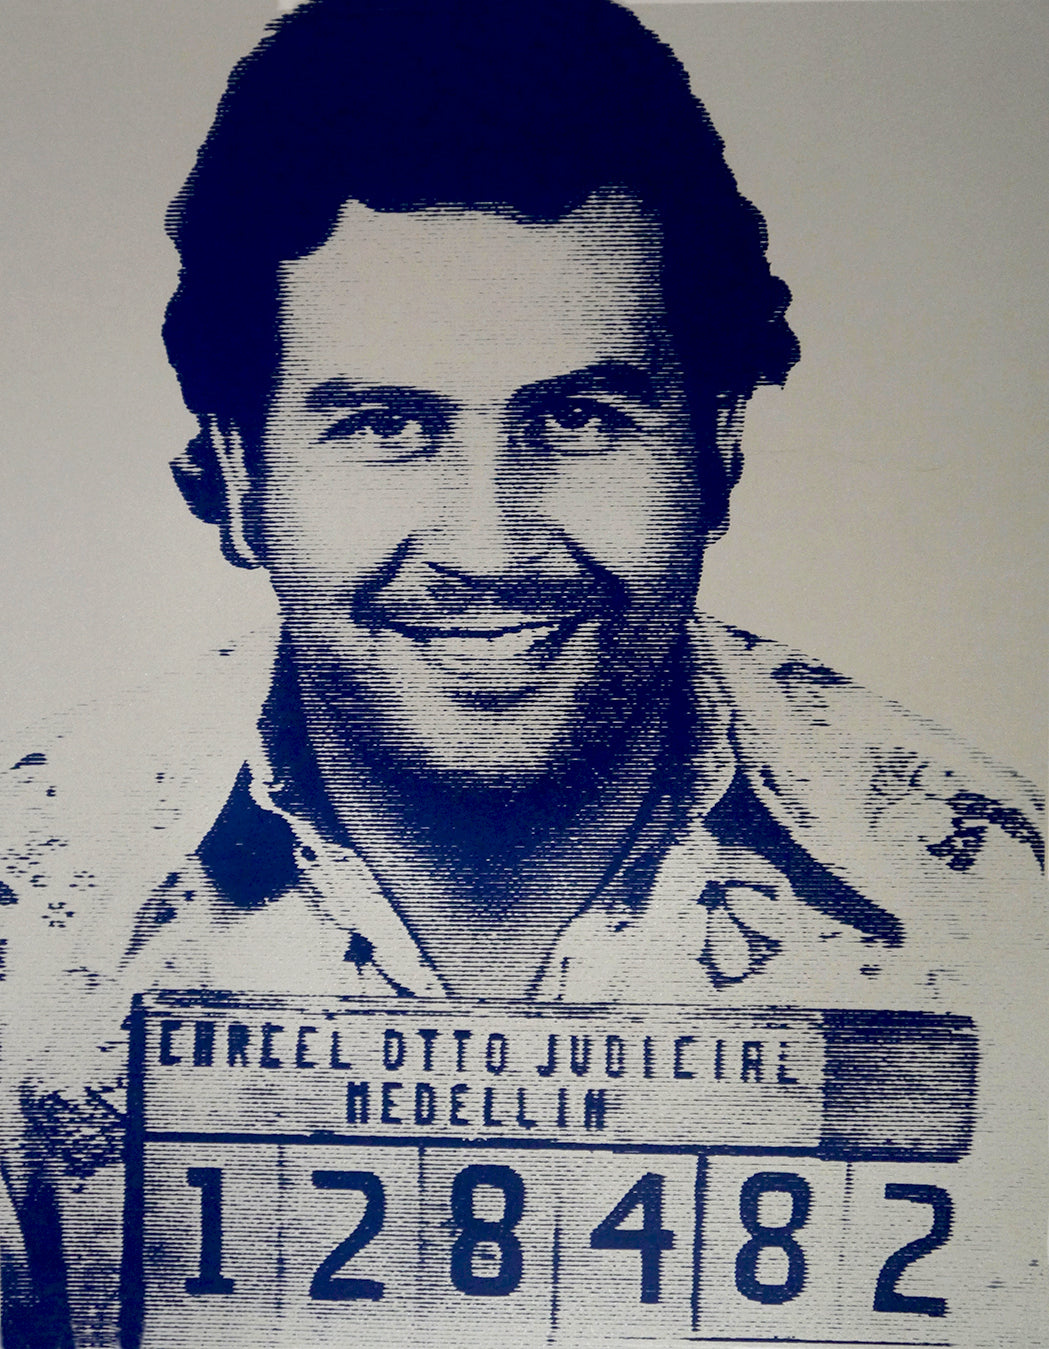 Pablo Escobar I